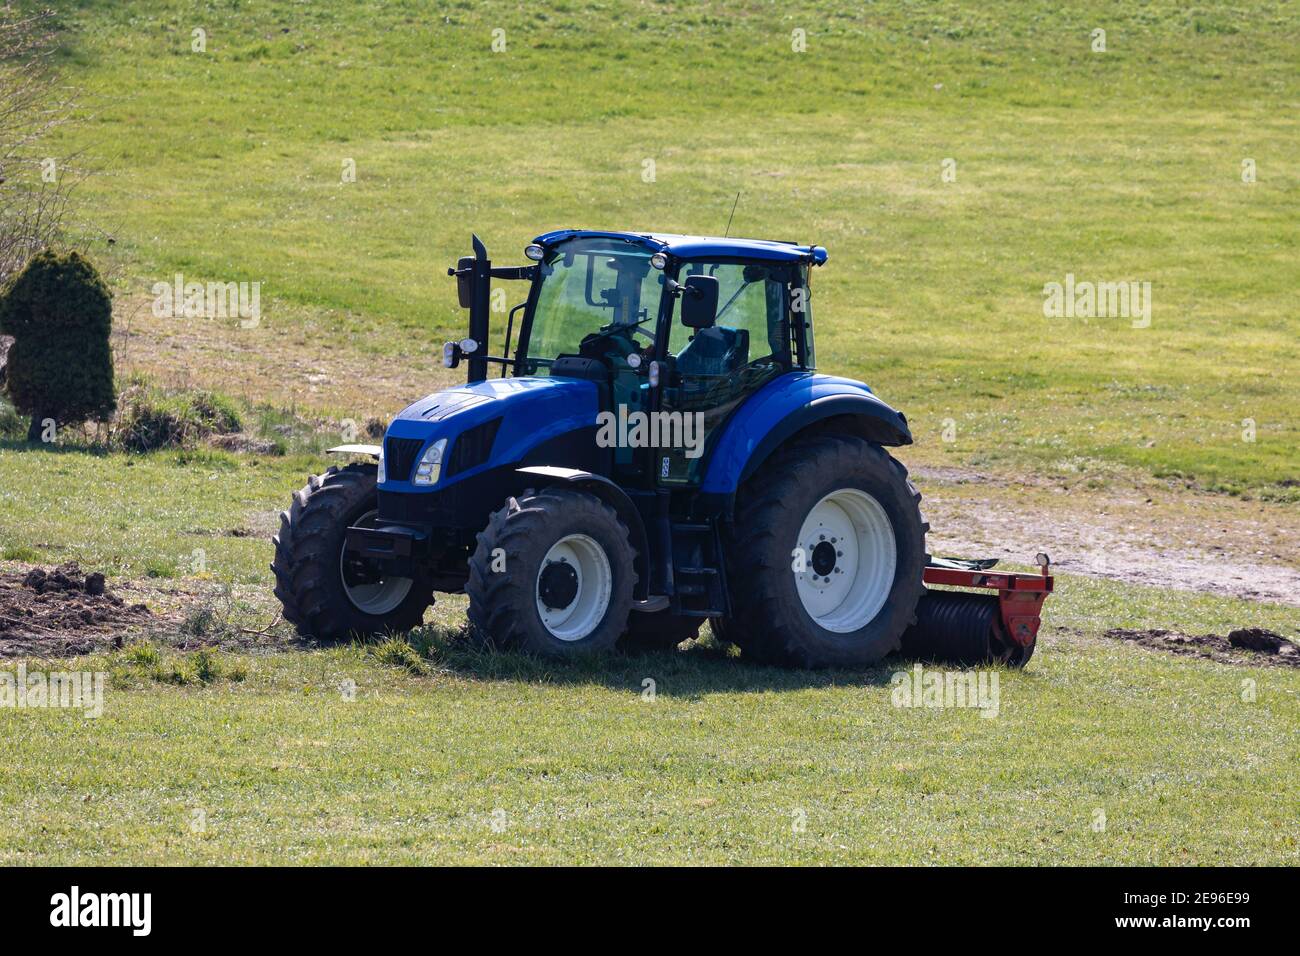 tracteur bleu prêt pour le travail dans les champs mais sans conducteur sur un pré vert, photographié de l'avant, le jour sans personne Banque D'Images